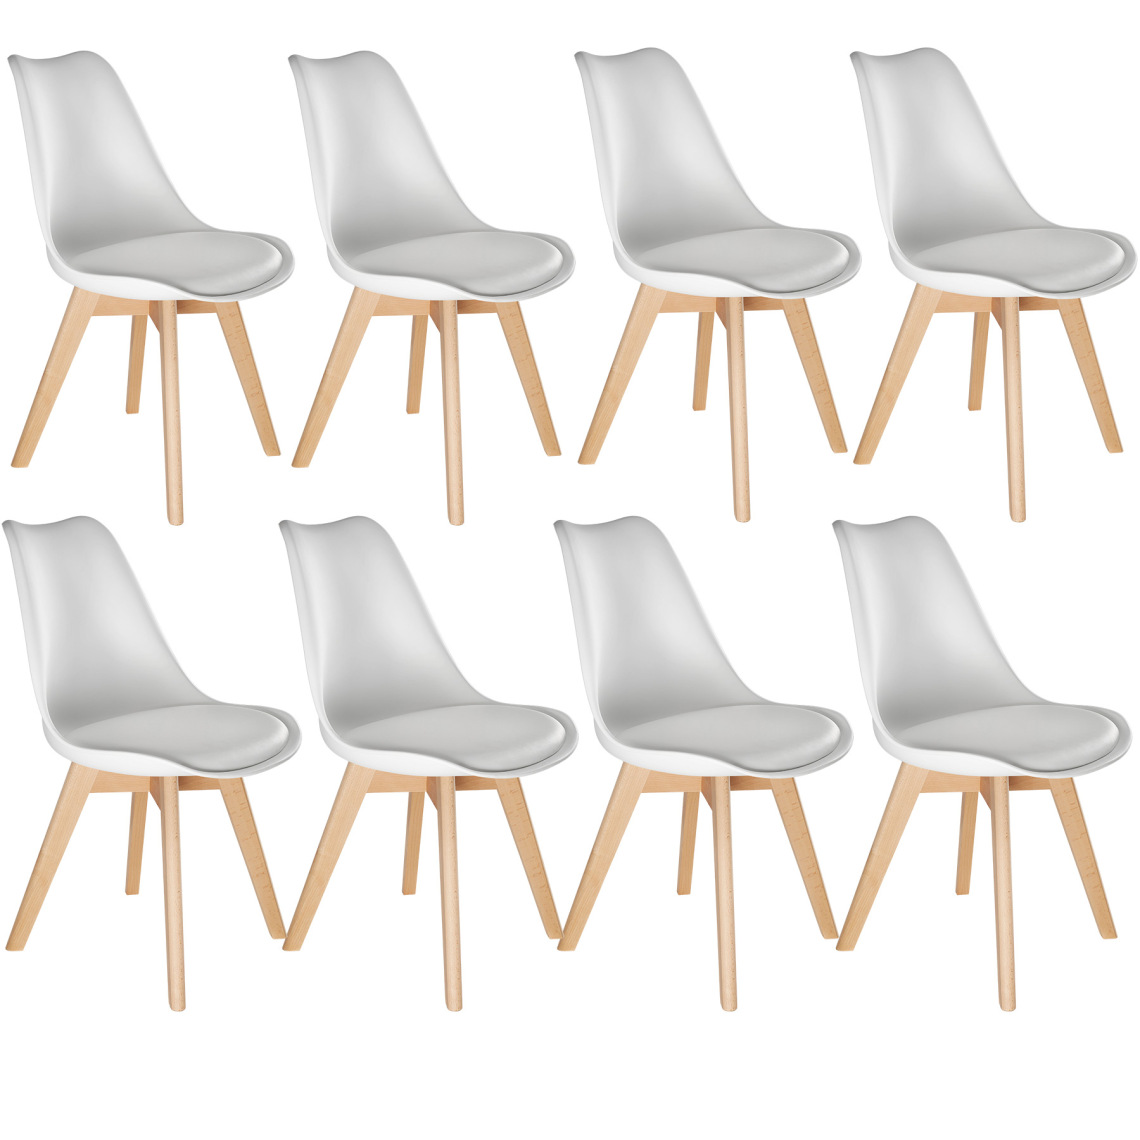 Tectake - 8 Chaises de Salle à Manger FRÉDÉRIQUE Style Scandinave Pieds en Bois Massif Design Moderne - blanc - Chaises